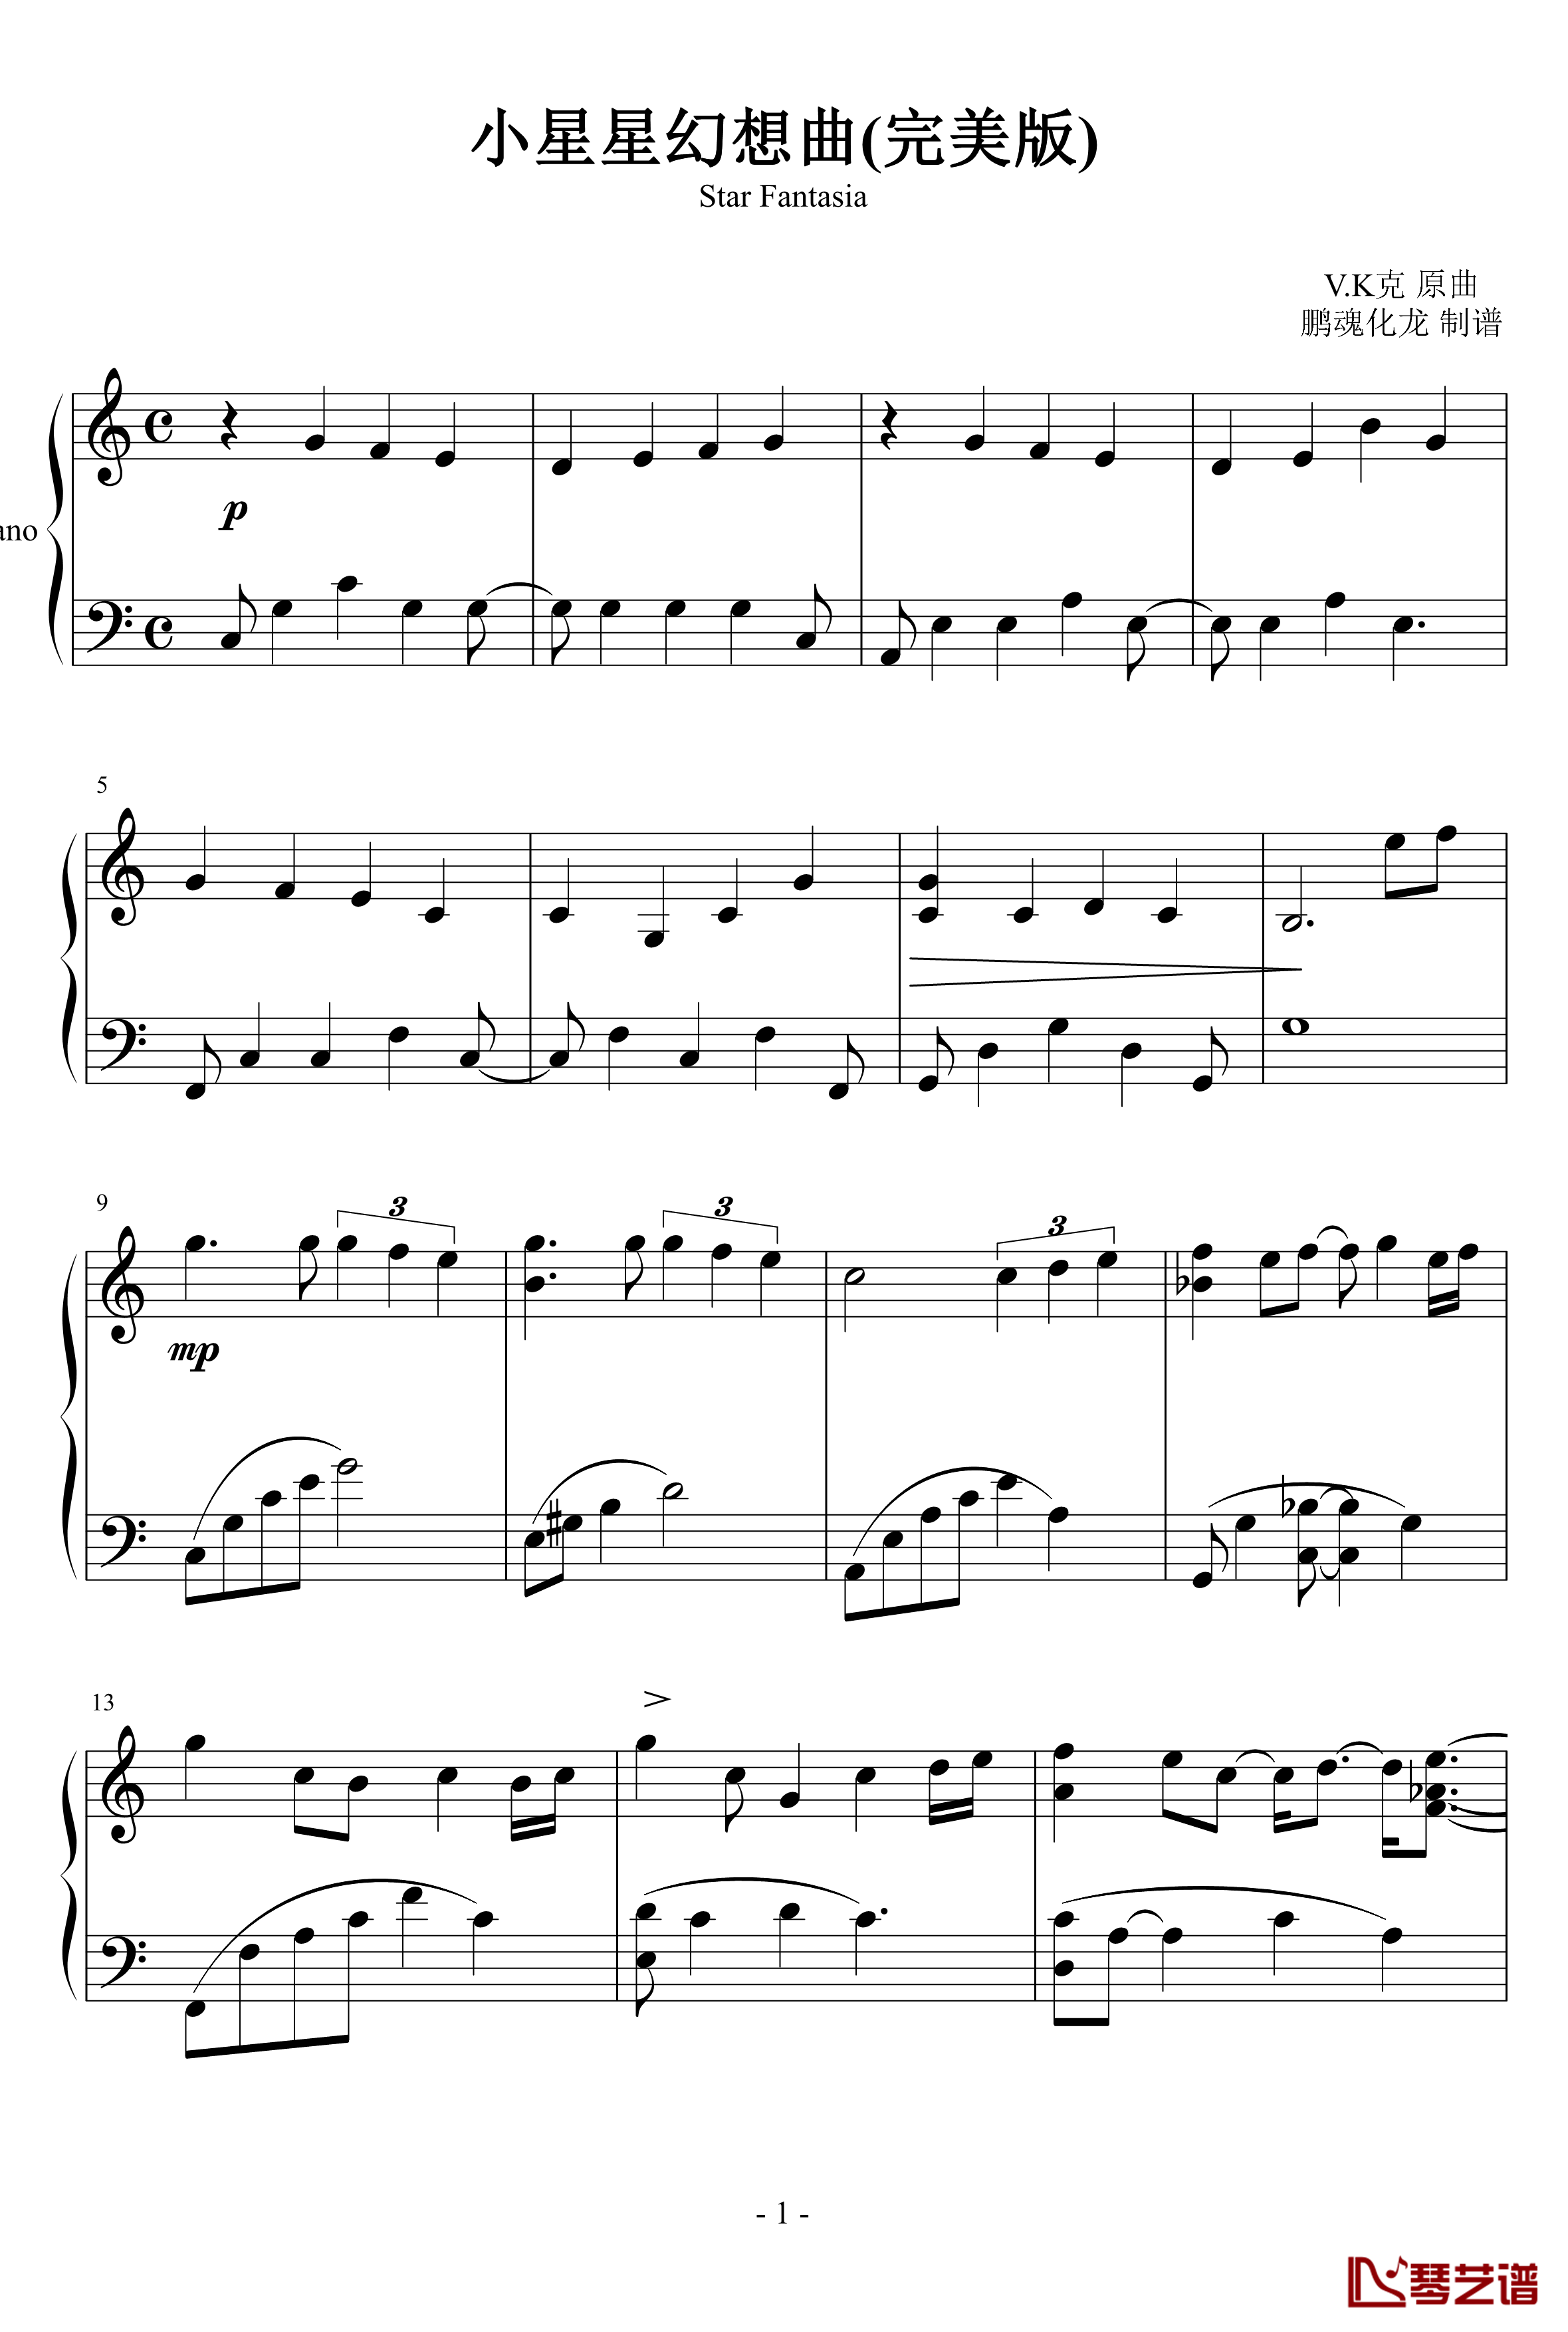 小星星幻想曲钢琴谱-完美版-V.K克1